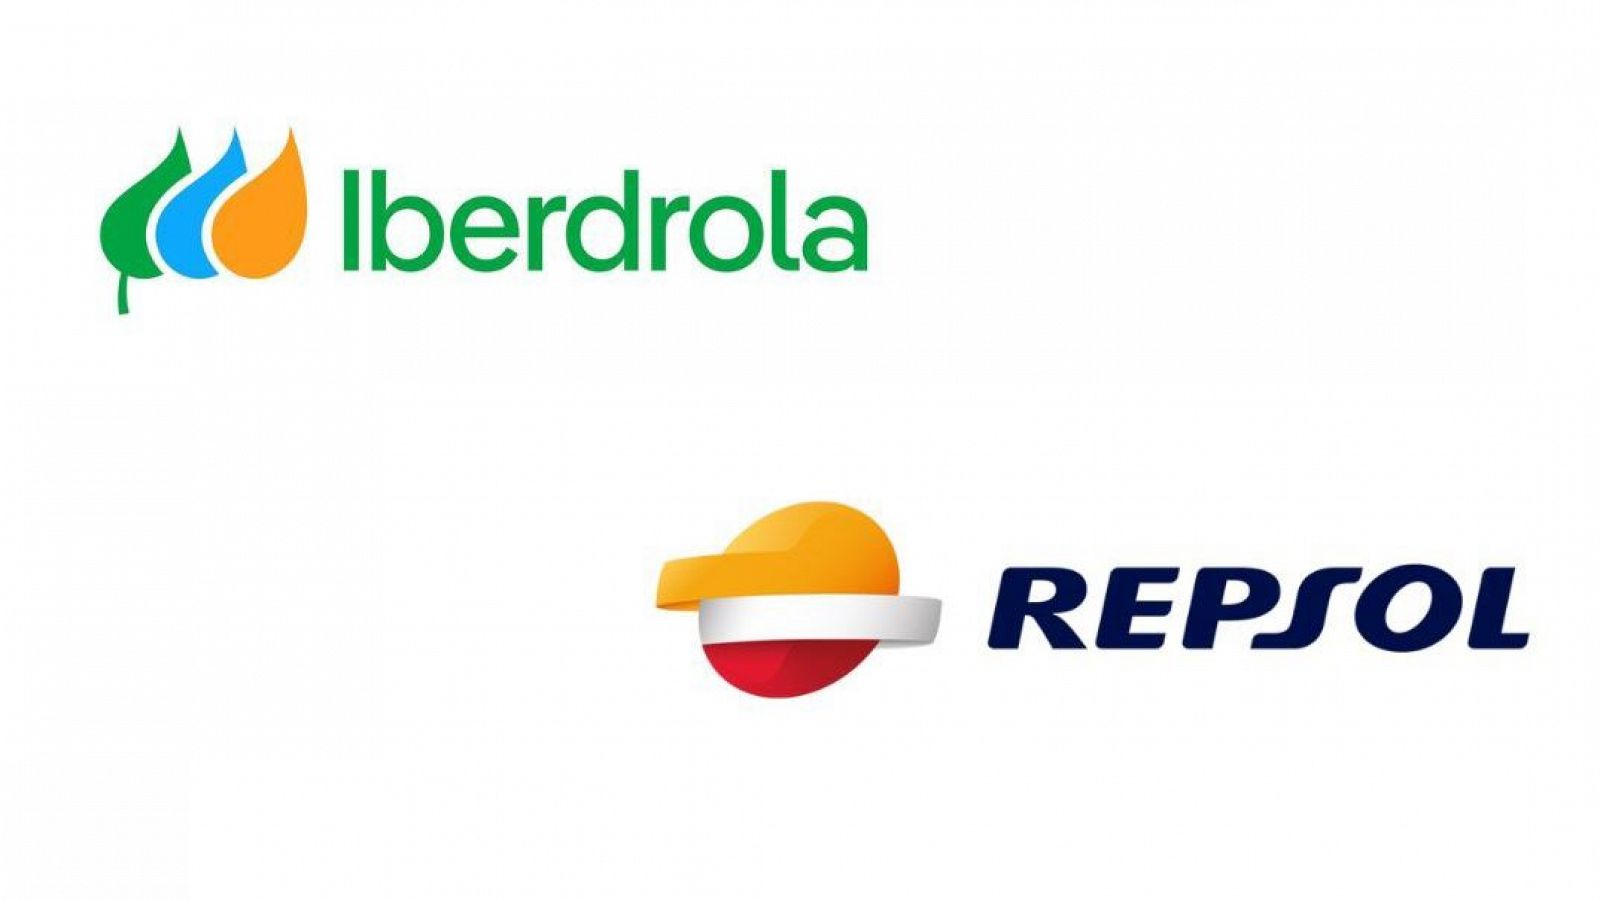 Iberdrola demanda a Repsol por "greenwashing" en sus campañas de publicidad